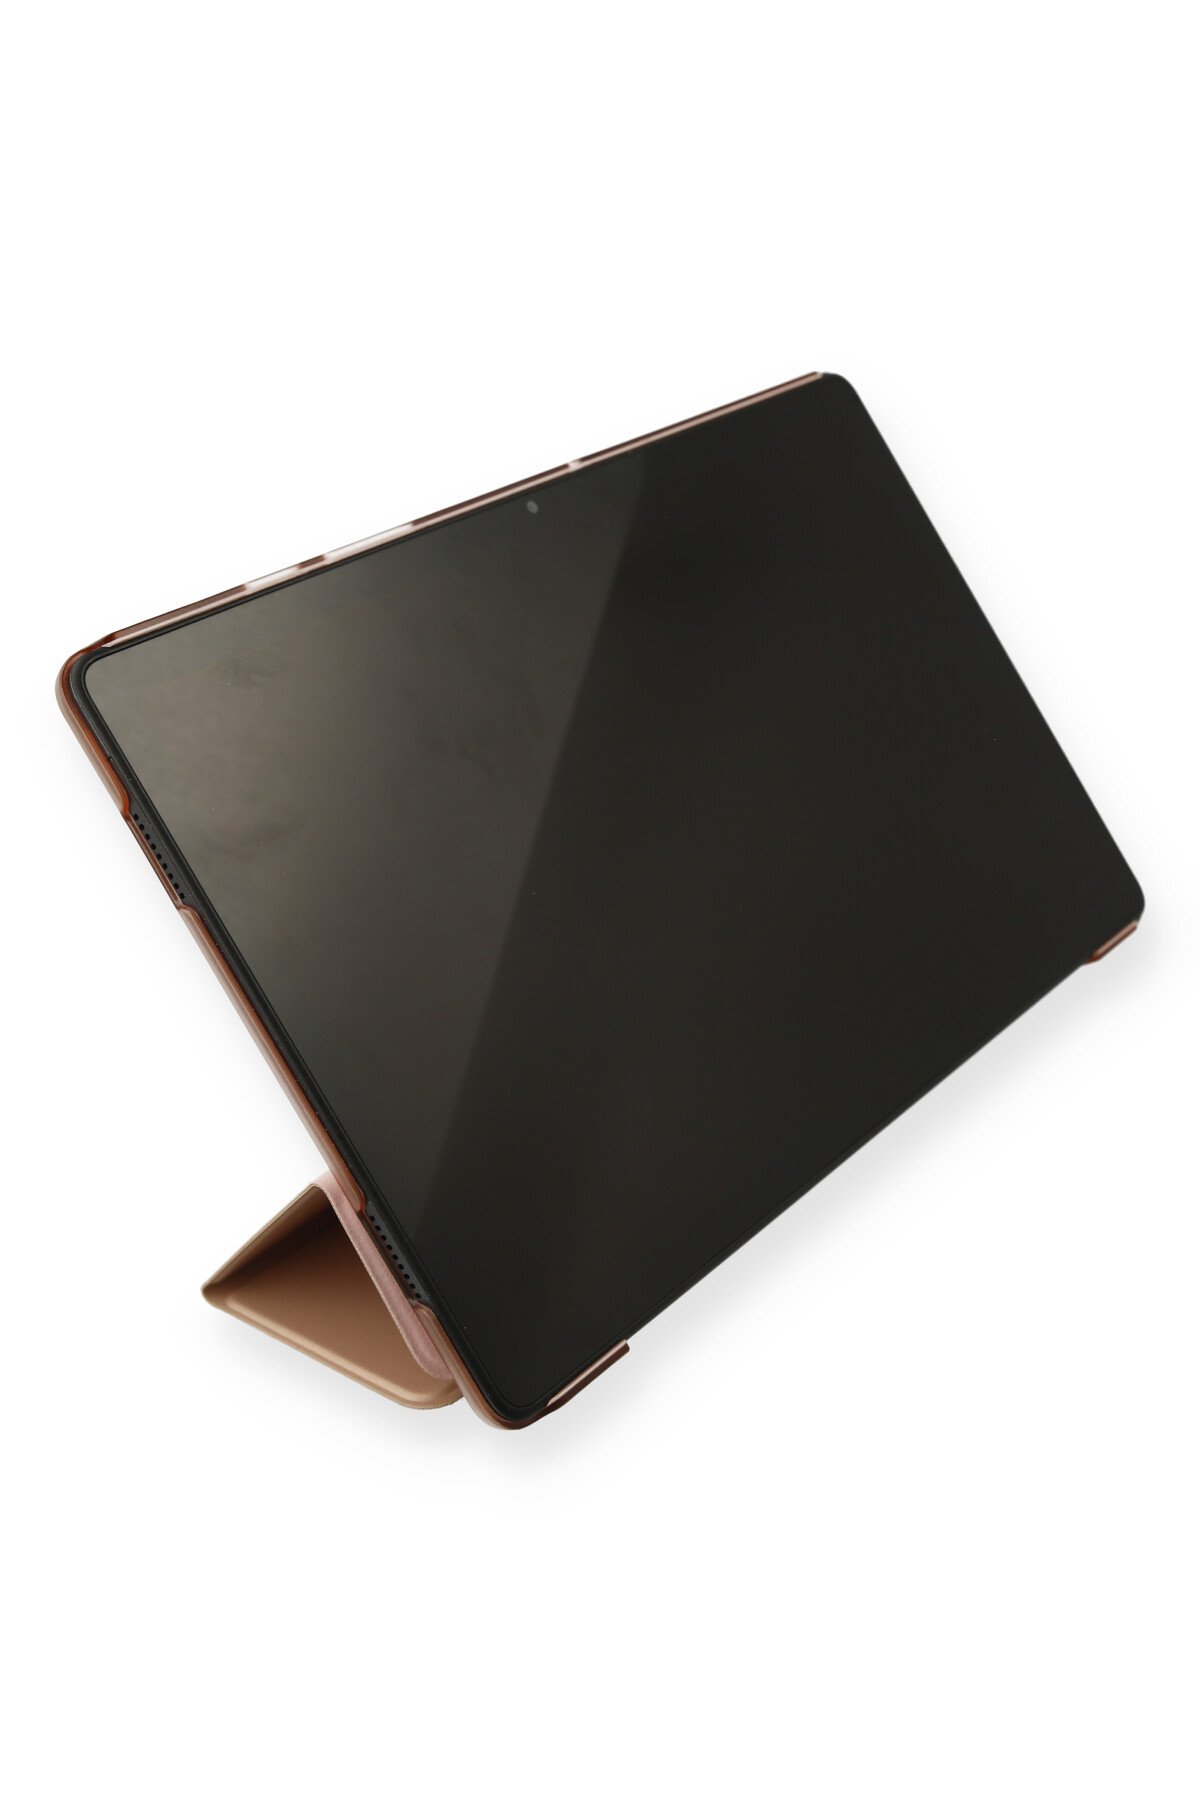 Newface iPad Air 2 9.7 Kılıf Evo Tablet Silikon - Siyah